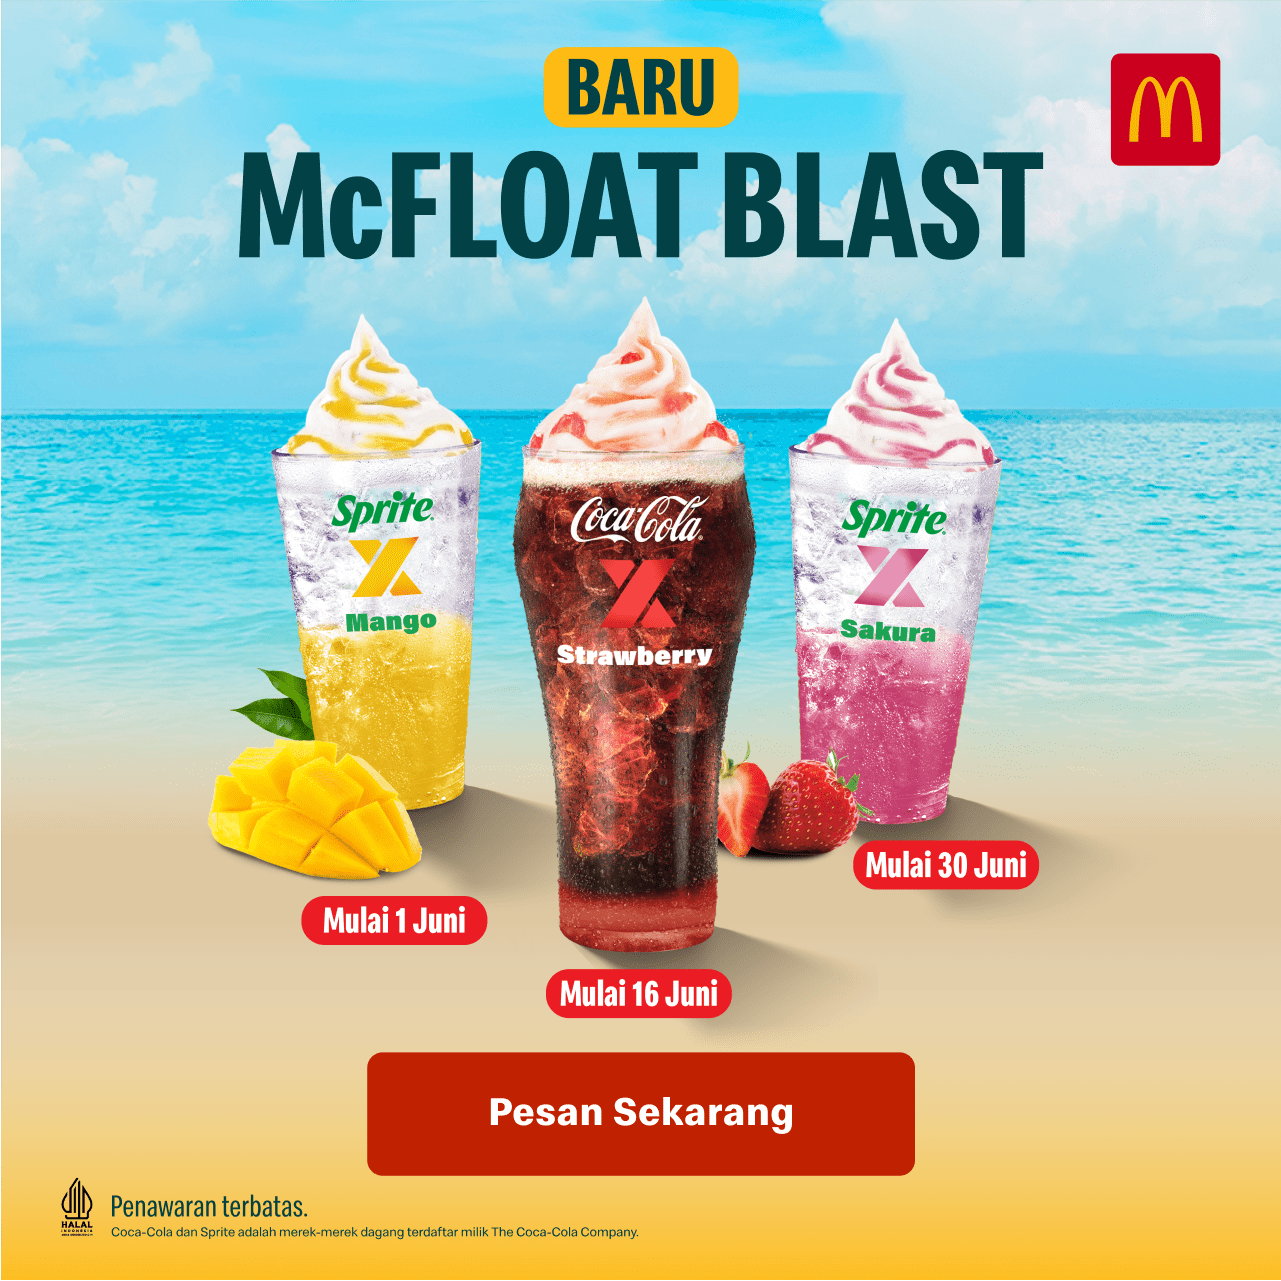 BARU! McDonalds McFloat Blast - Harga mulai Rp. 17.000